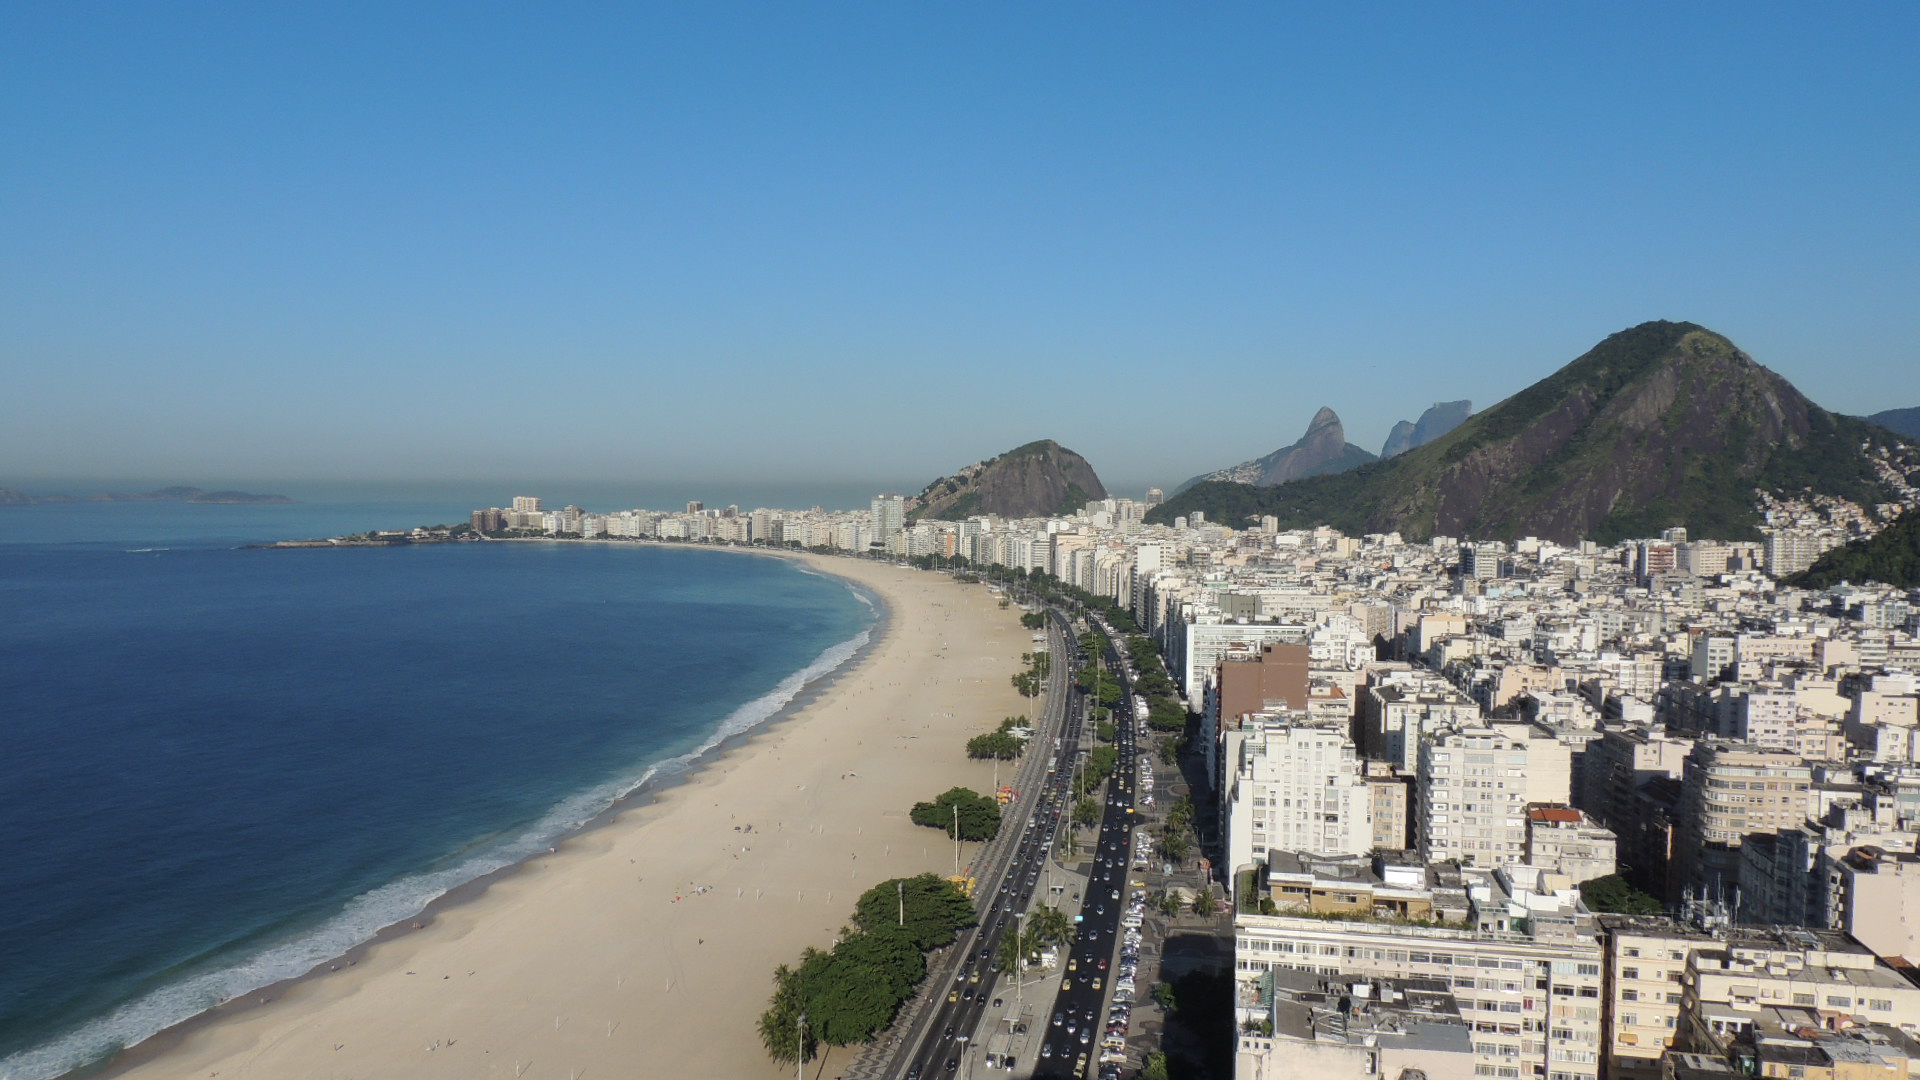 Dicas essenciais para aproveitar o melhor da Praia de Copacabana